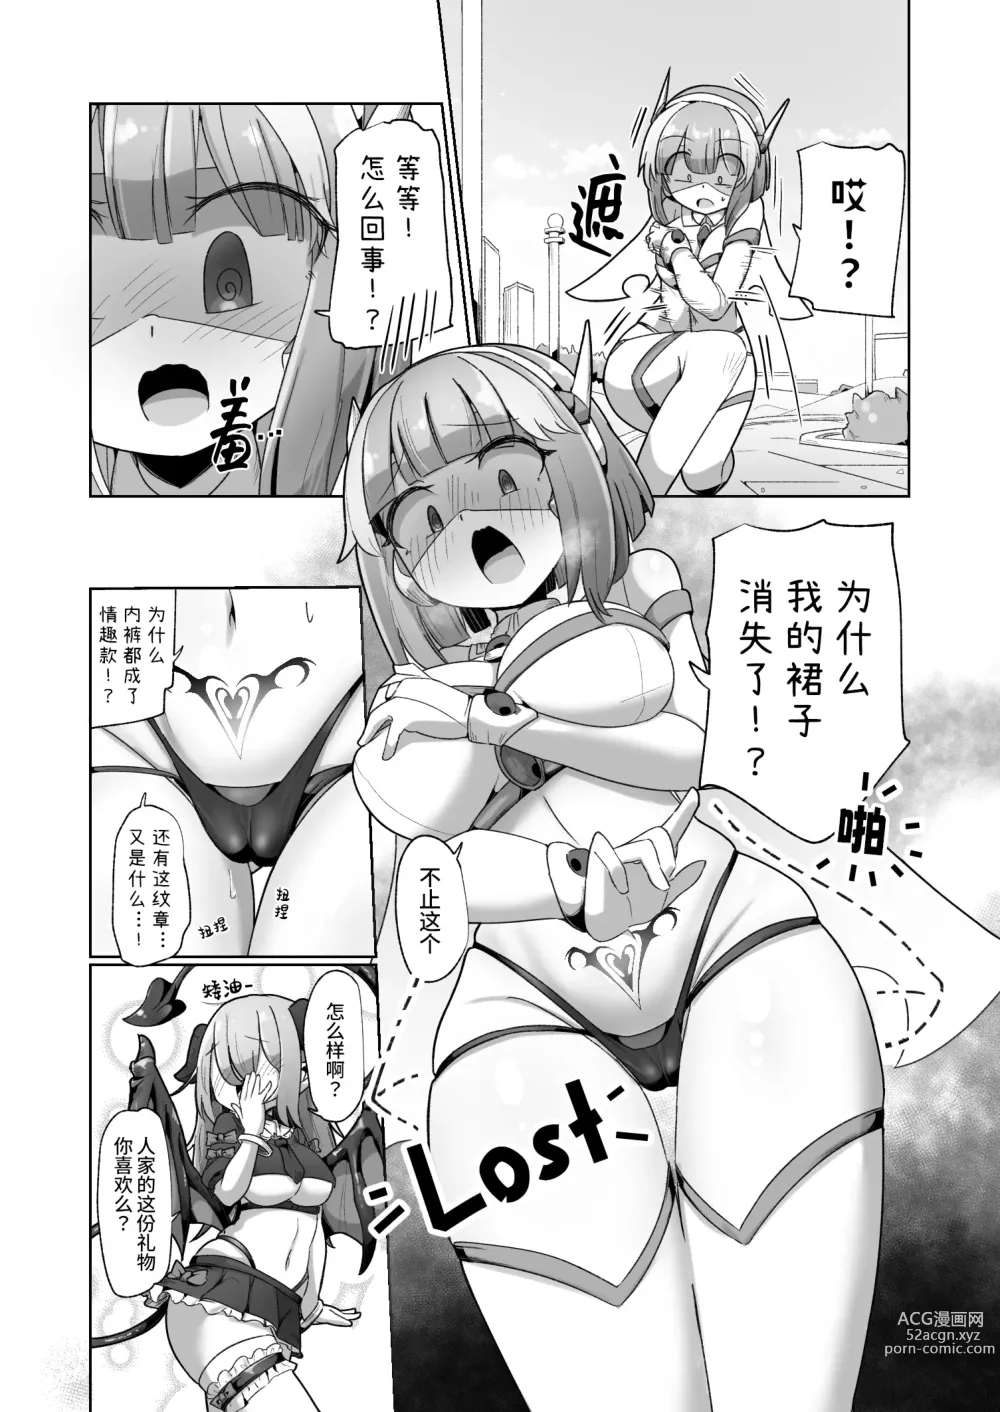 Page 7 of doujinshi 被本该守护的同伴侵犯的这种感觉怎么样啊(笑)??